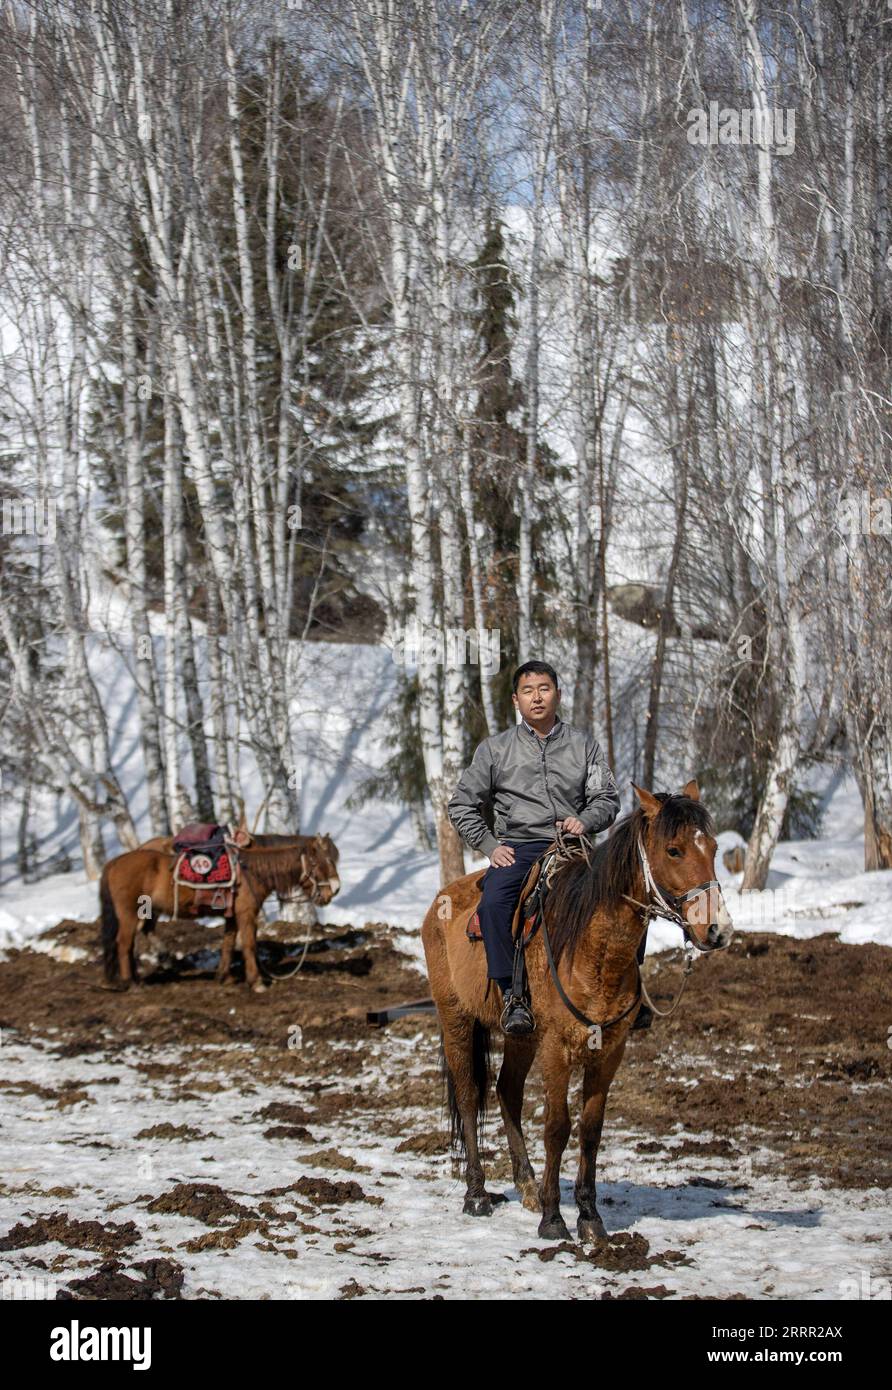 230427 -- HEMU, 27 aprile 2023 -- Suka torna in un allevamento di cavalli nel villaggio di Hemu di Kanas, regione autonoma di Xinjiang Uygur della Cina nord-occidentale, 30 marzo 2023. Hemu Village si trova in un punto panoramico di Kanas lungo il punto di partenza dell'autostrada nazionale G219. Suka, la segretaria del partito del villaggio, sta guidando la gente del posto nel viaggio verso la rivitalizzazione rurale. Entrare a far parte della squadra di cavalli è un'importante fonte di reddito per gli abitanti del villaggio. Ogni membro può portare due cavalli al team per fornire servizi ai turisti. Attualmente, 68 membri del team hanno evitato la povertà, e il loro reddito annuale è Foto Stock